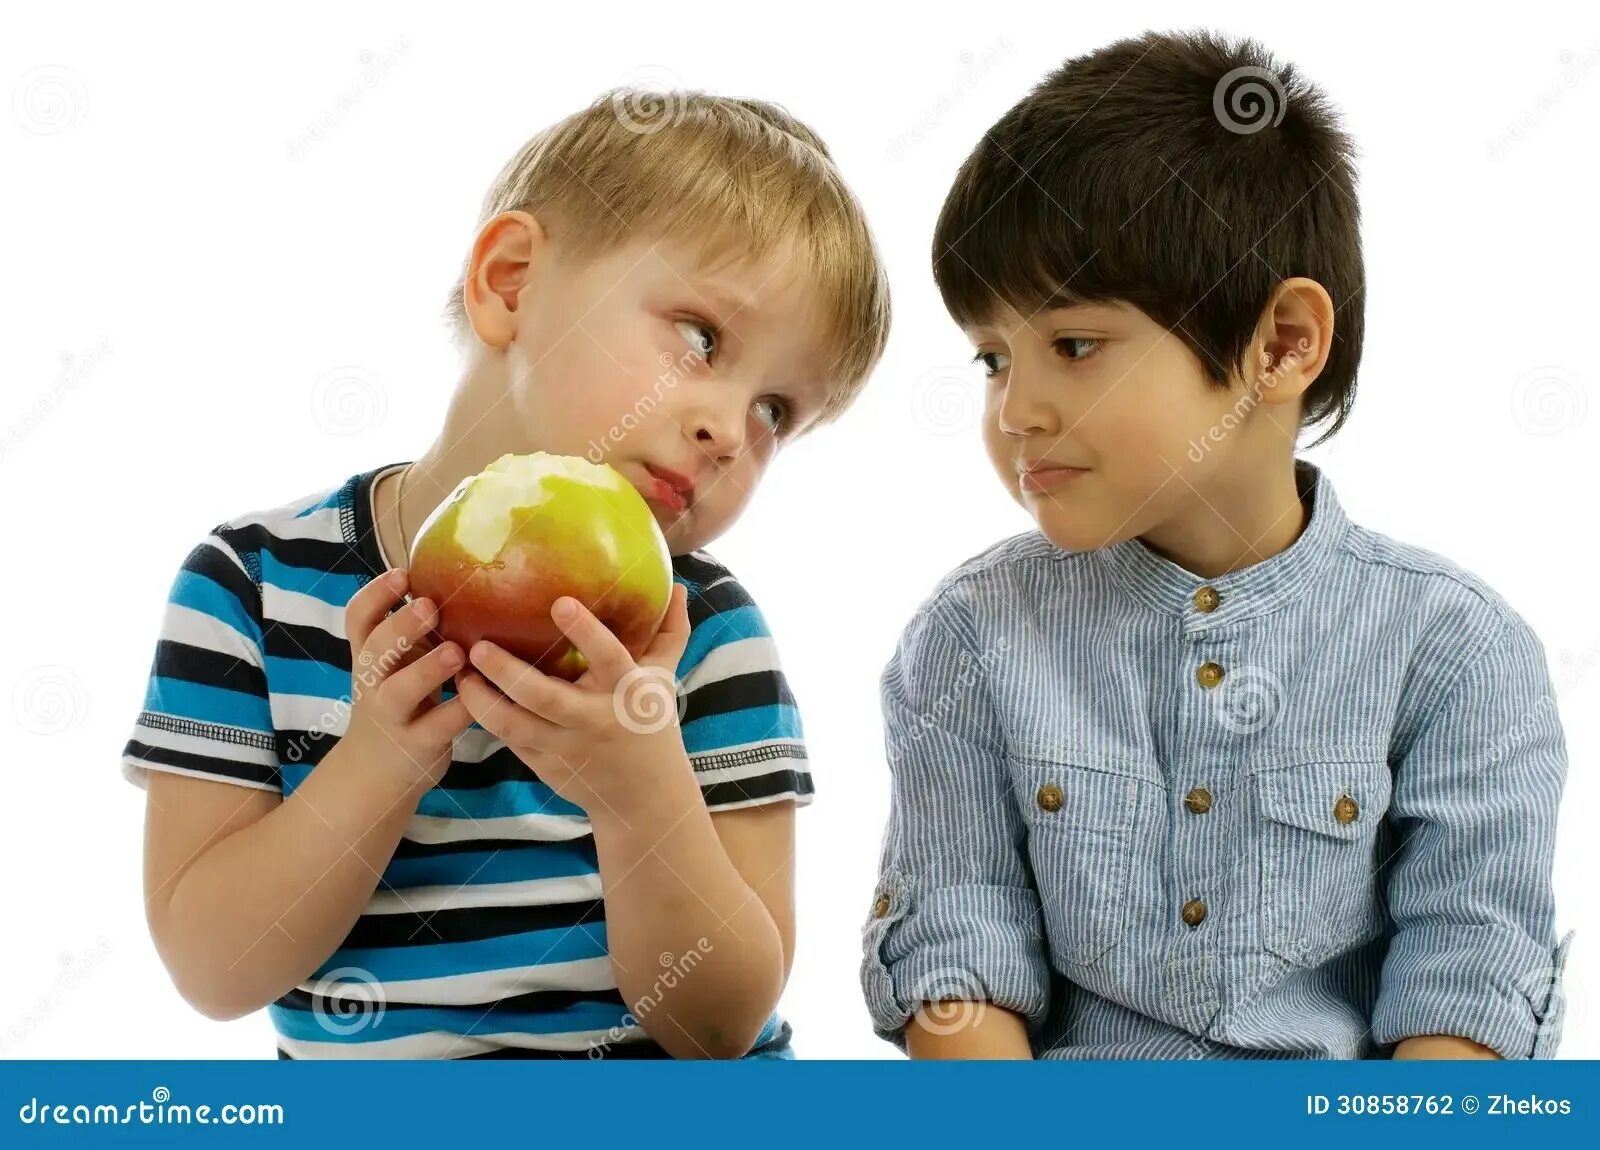 Ребенок делится с другом. Дети делятся друг с другом. Ребенок делится яблоком. Мальчик делится яблоком.